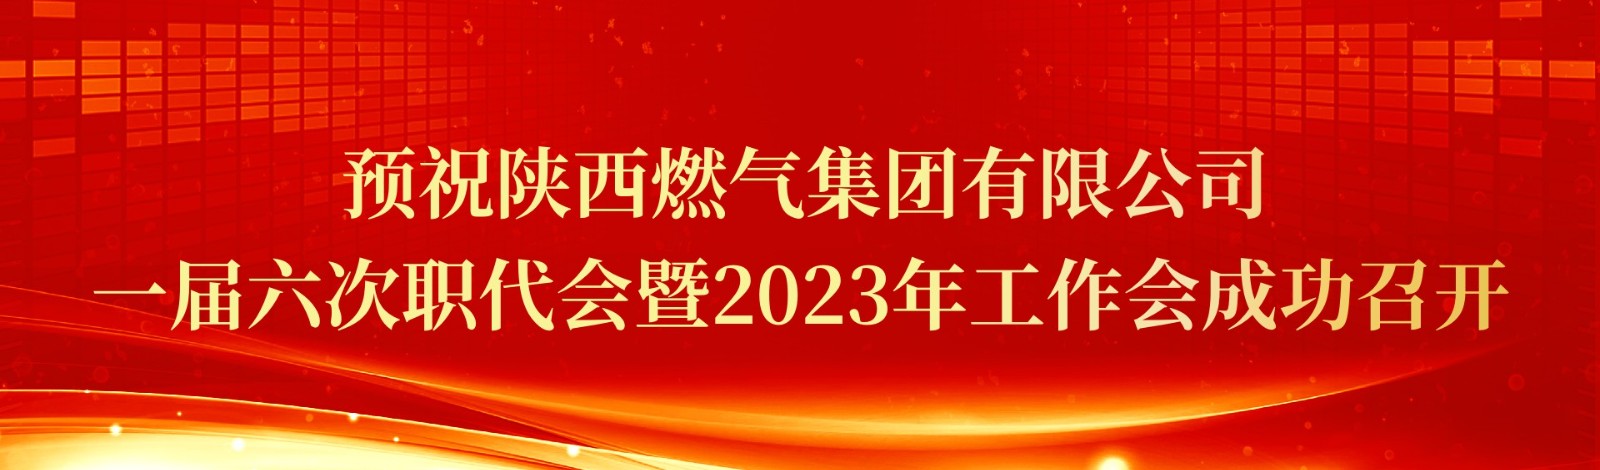 预祝爱游戏官网和马竞达成合作一届六次职代会暨2023年工作会成功召开